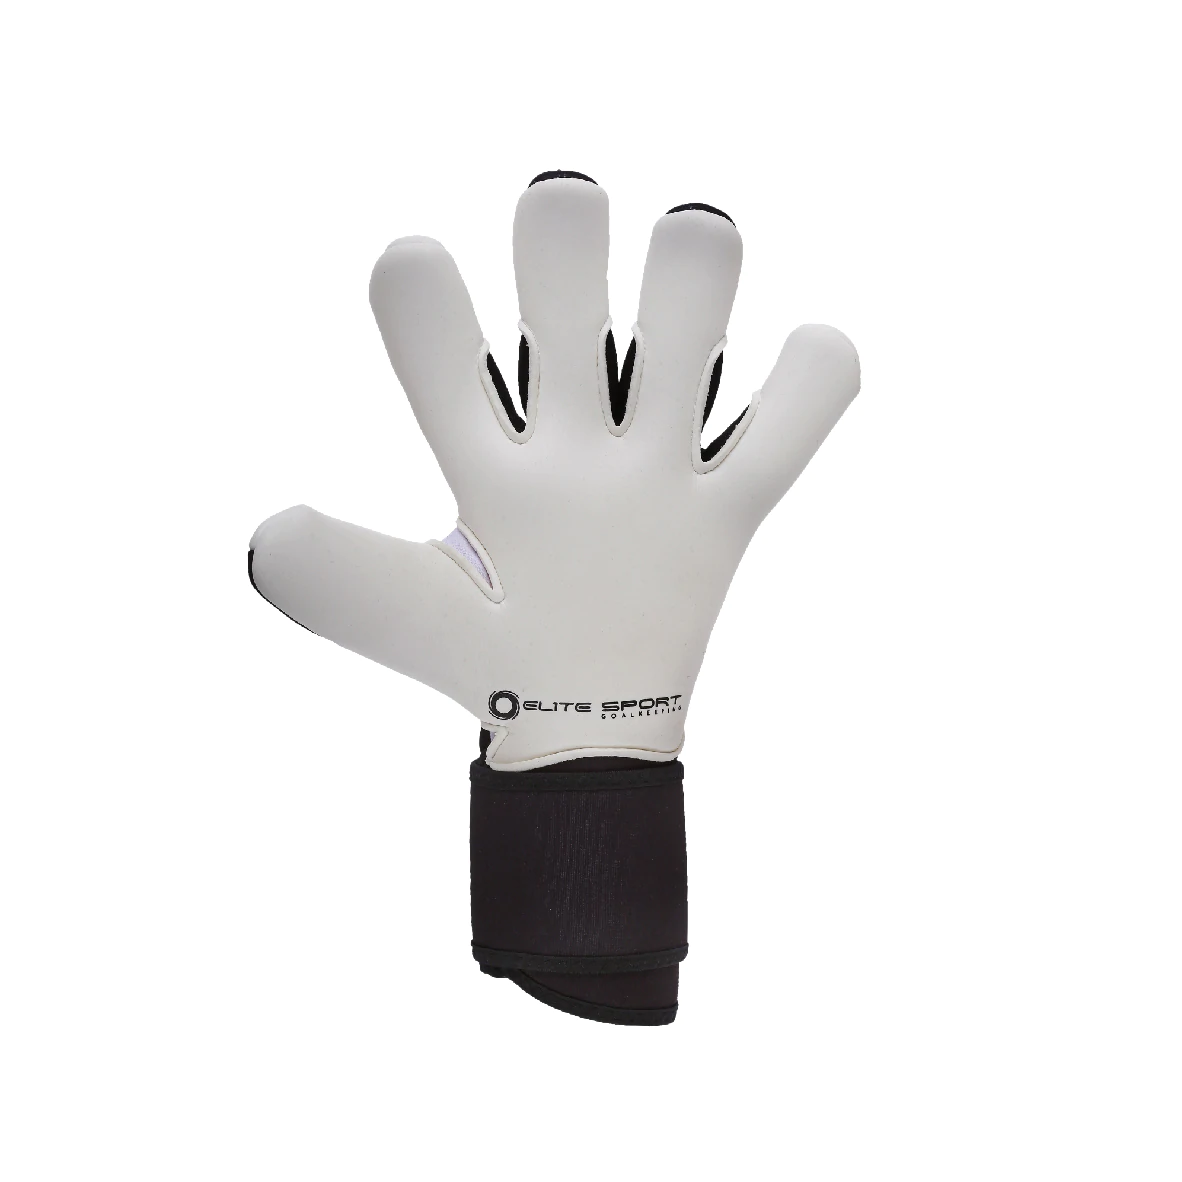 Elite Neo Combi Black 2022 Goalkeeper Gloves-Black/White